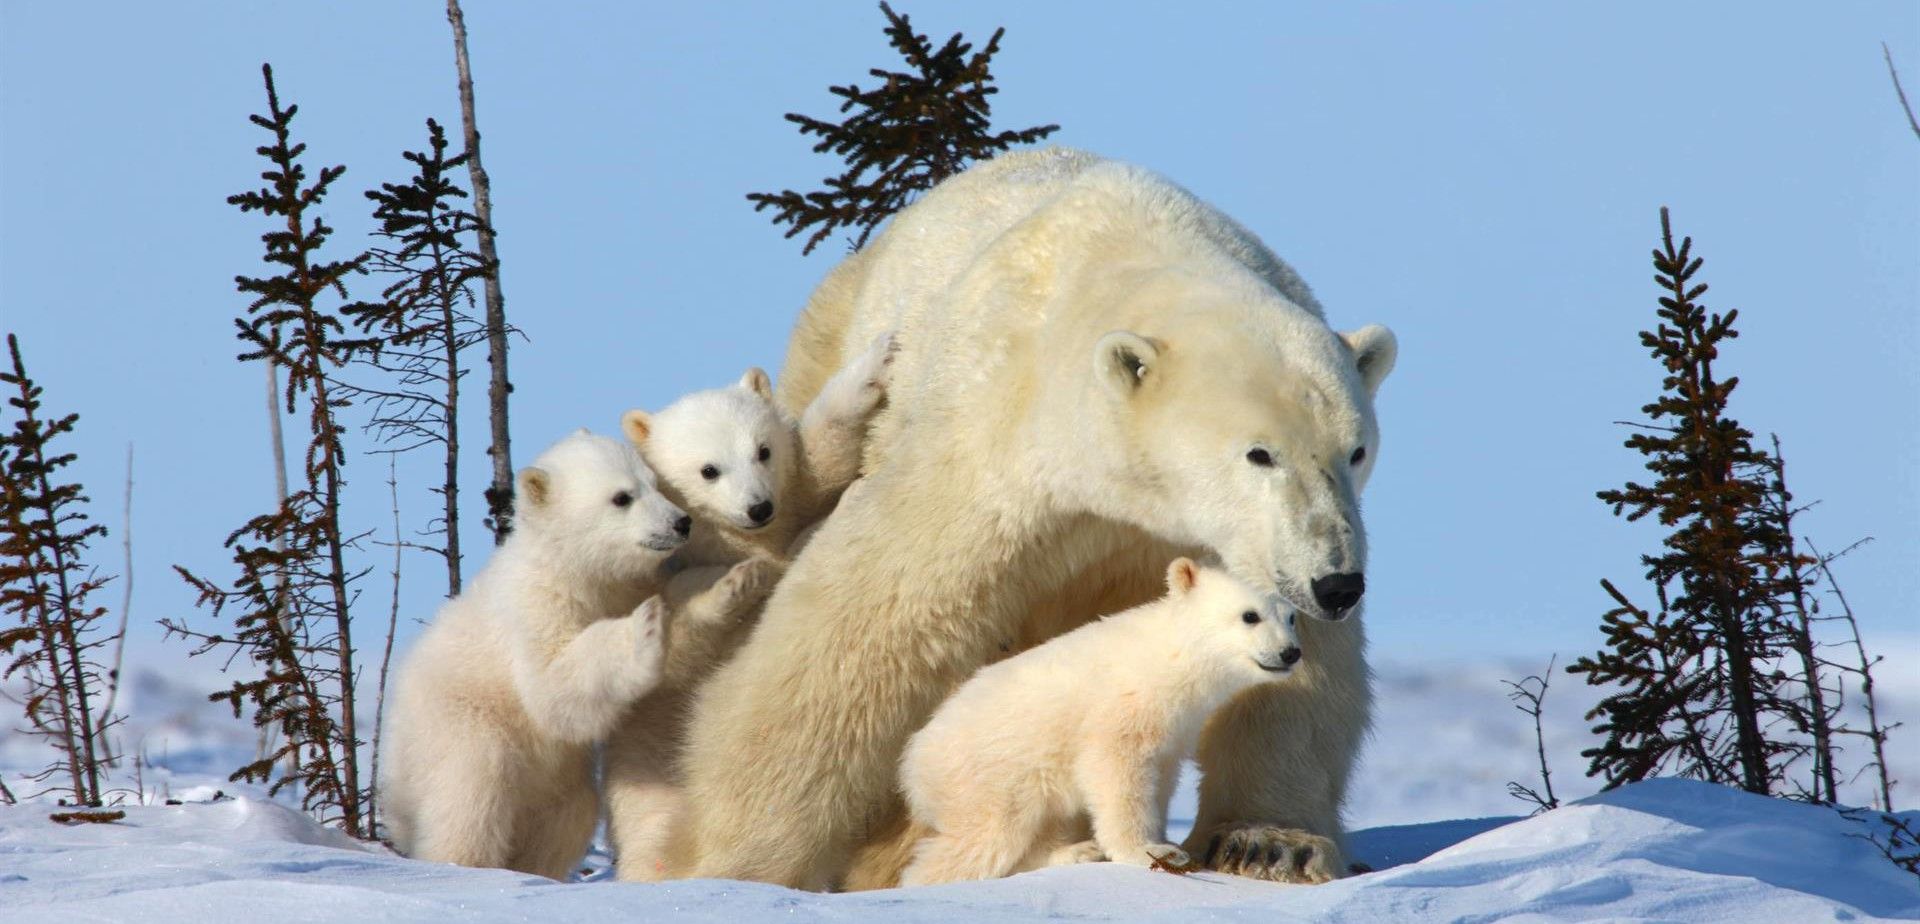 El oso polar es uno de los animales amenazados más emblemáticos / Foto: David Jenkins - WWF